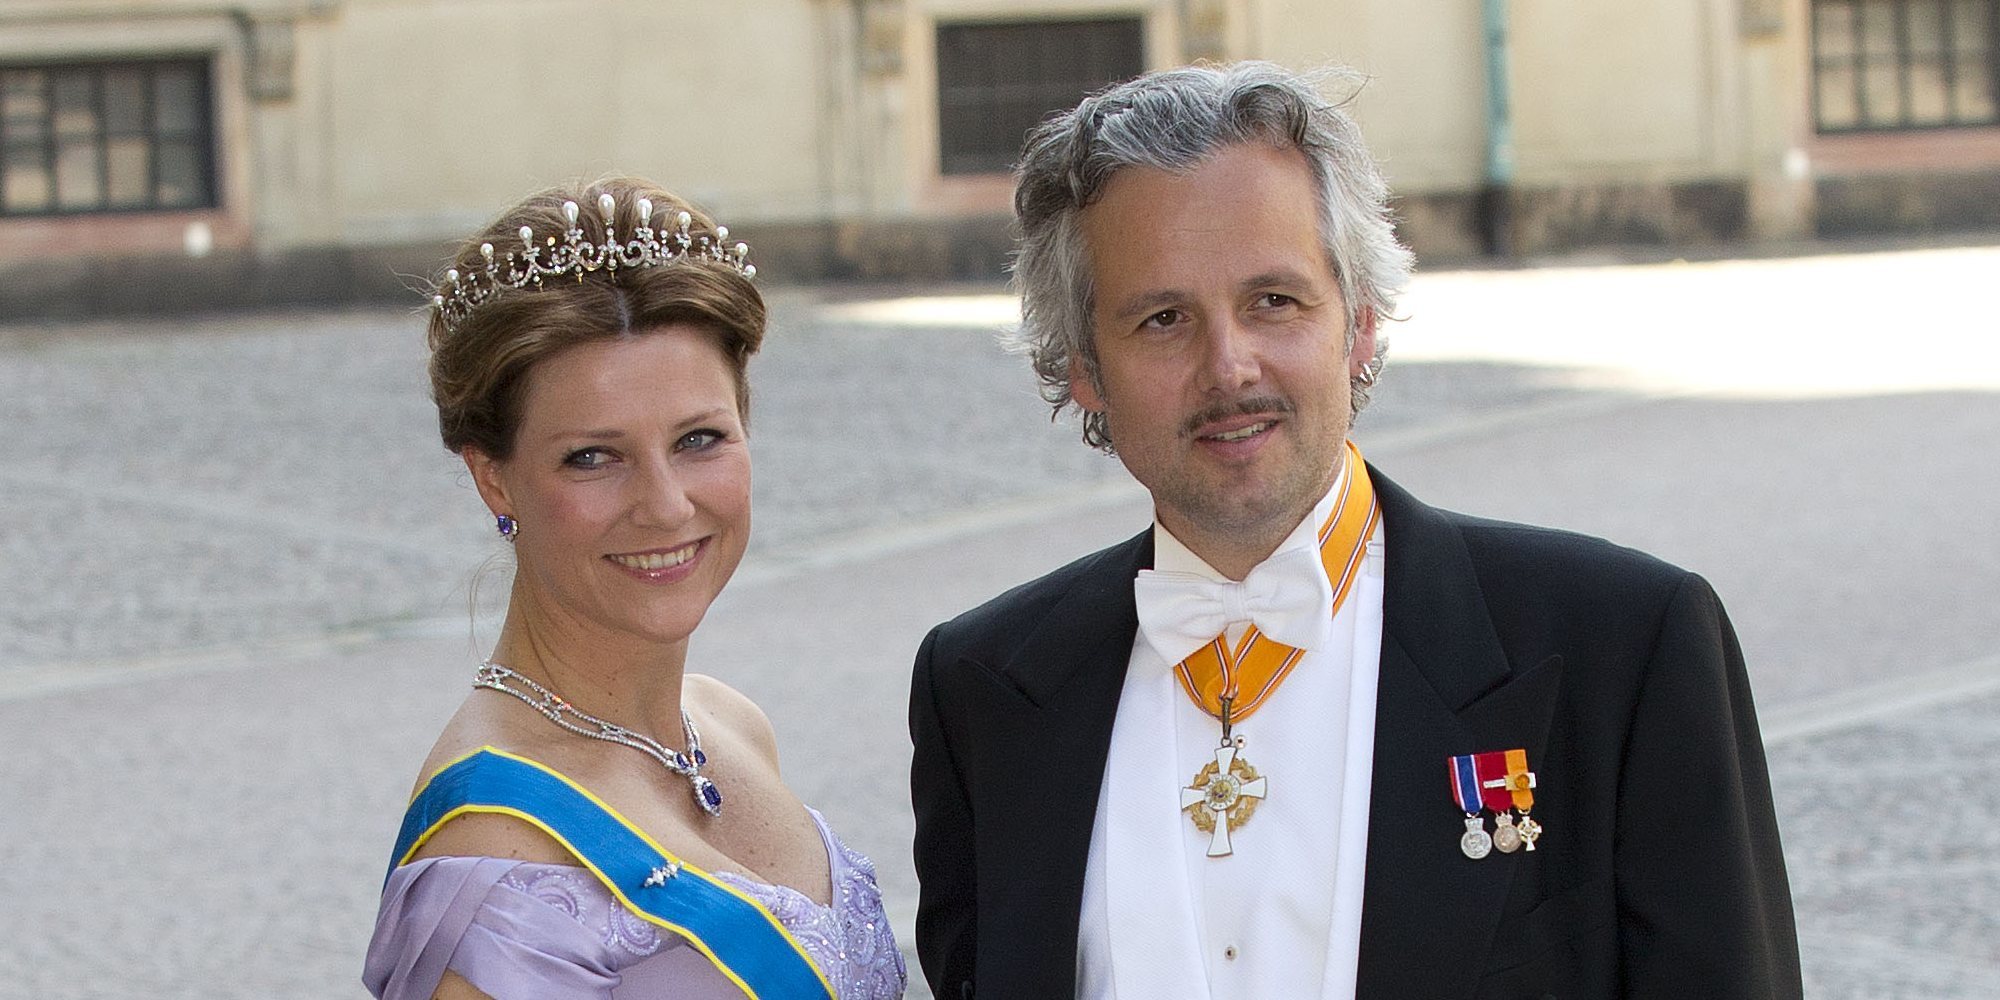 Ari Behn, exmarido de la Princesa Marta Luisa de Noruega, se suicida a los 47 años